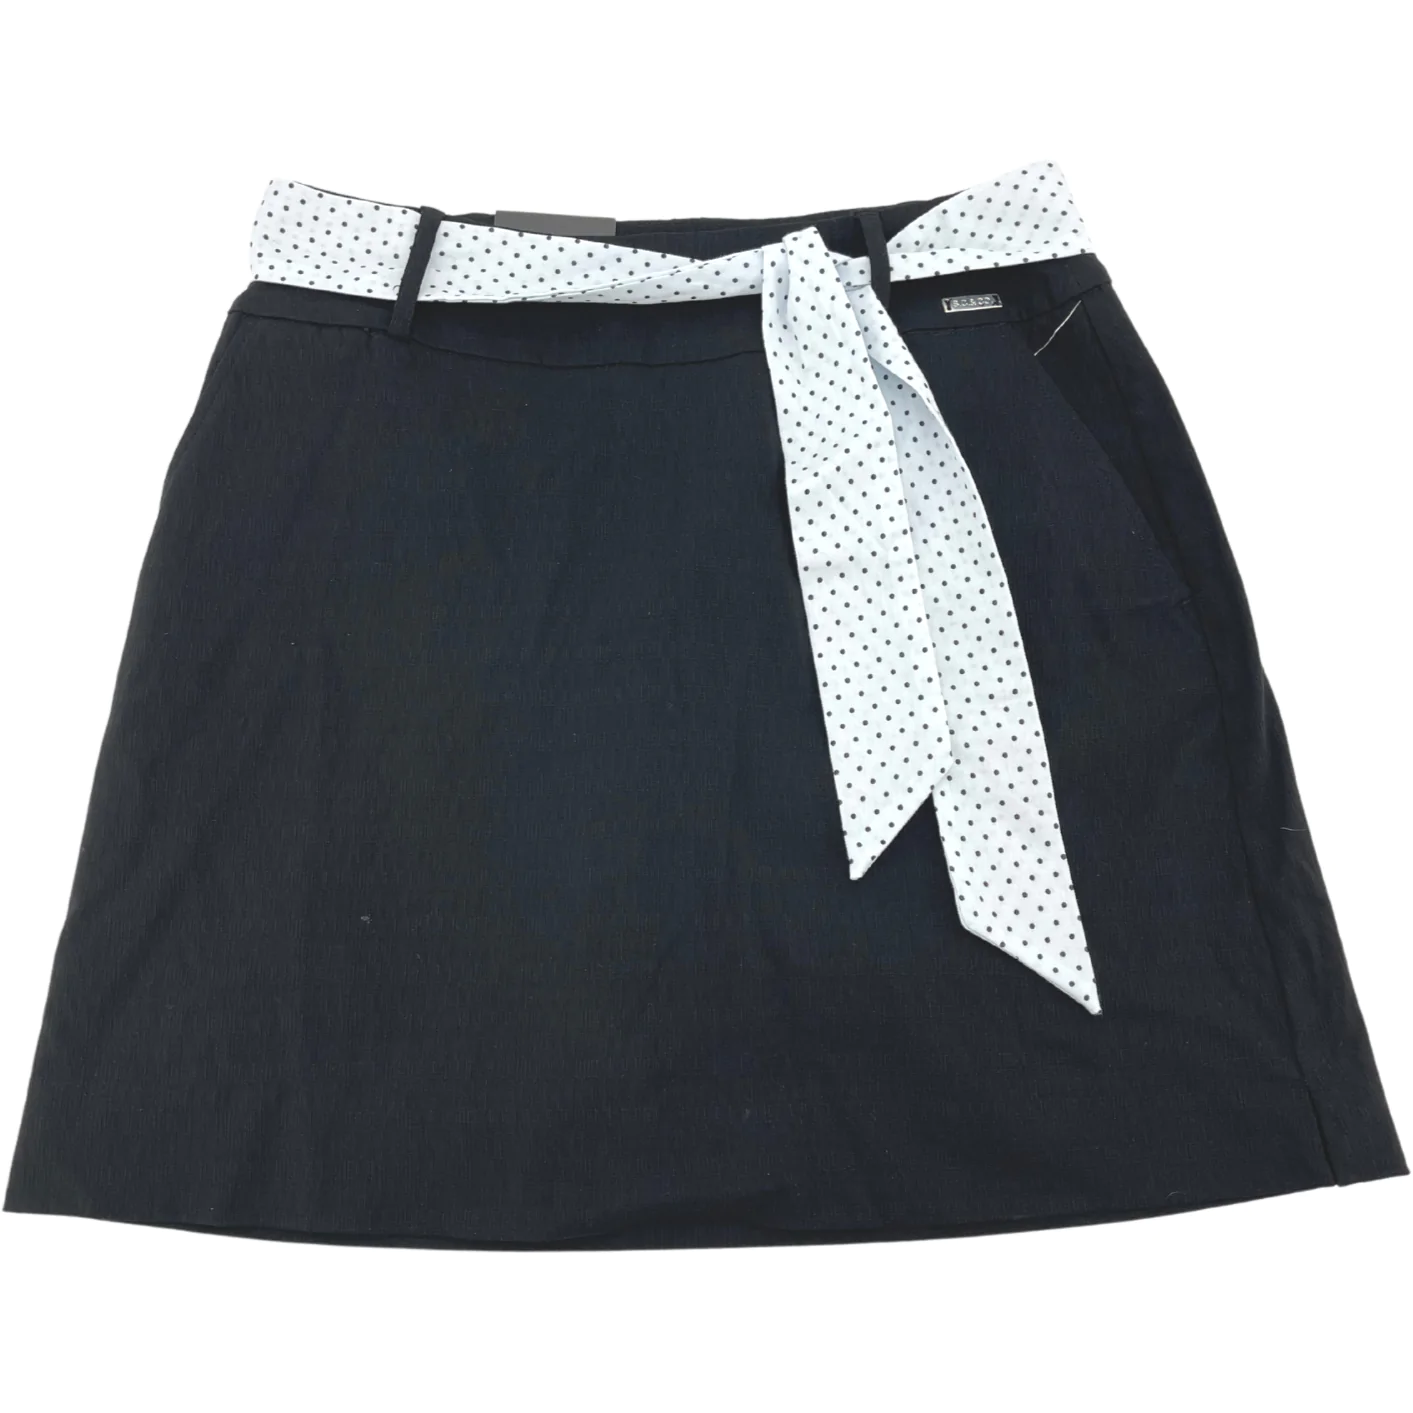 S.C & Co. Women's Skort / Skirt with Belt / Black / Various Sizes